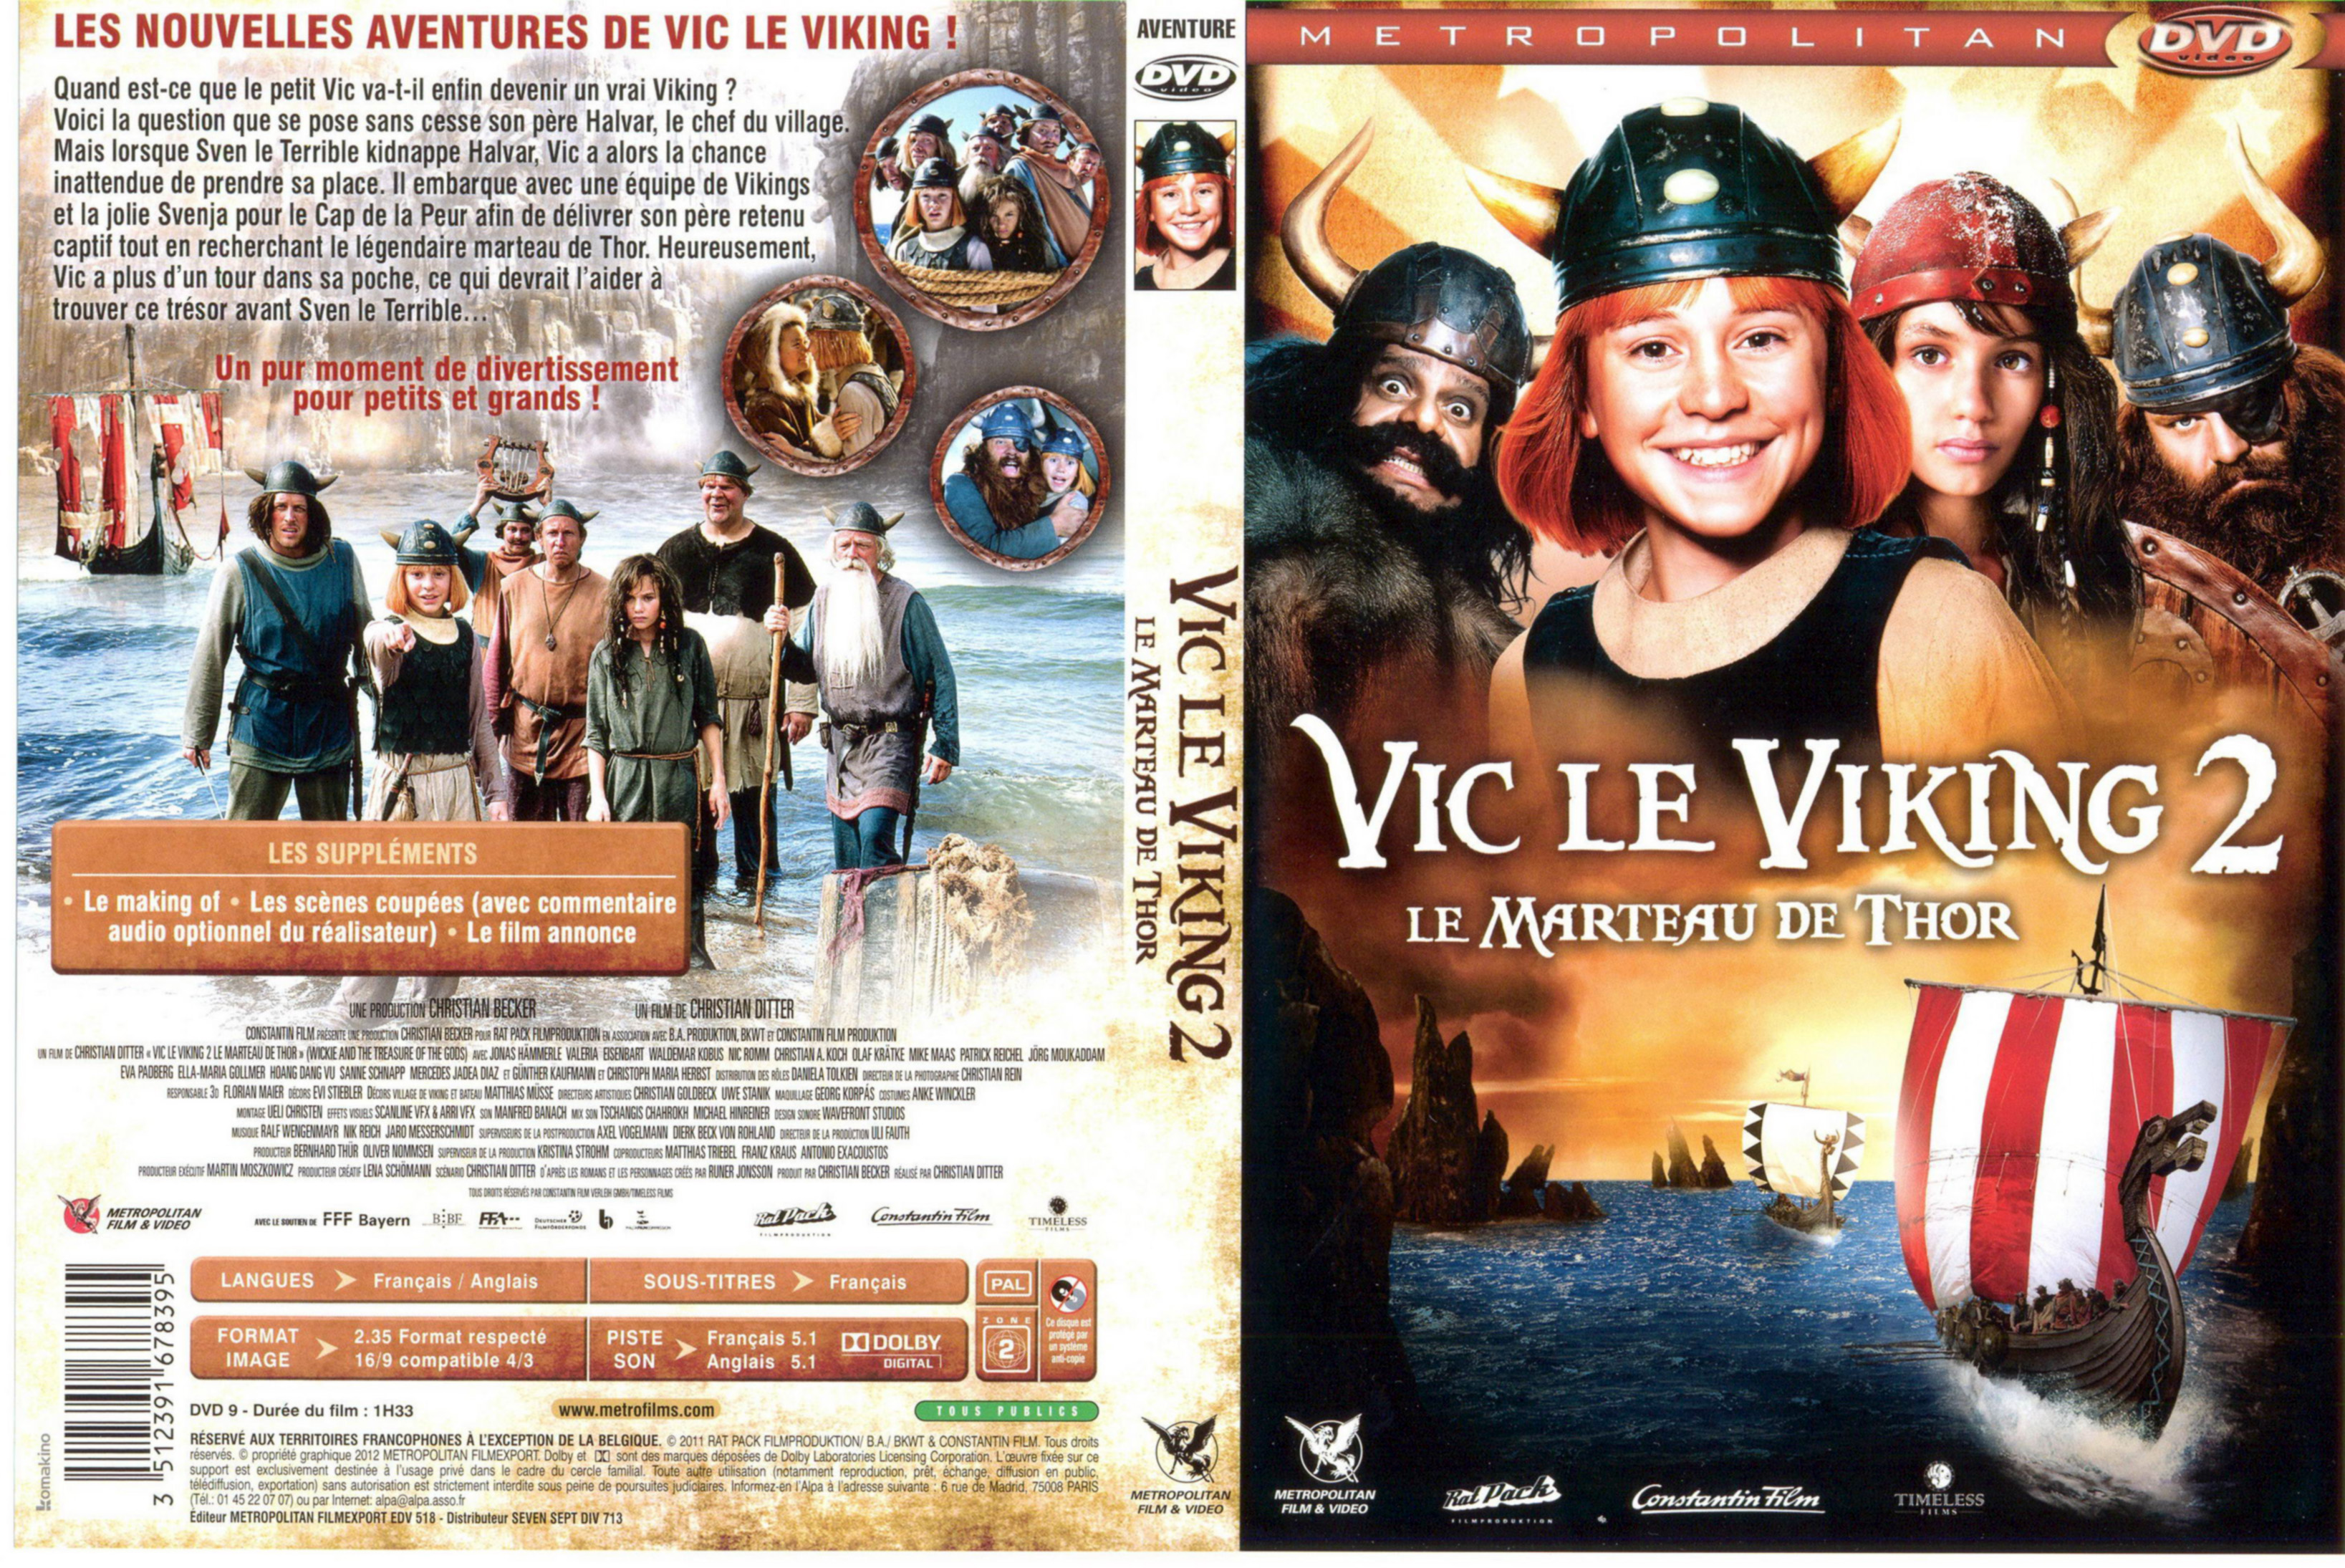 Jaquette DVD Vic le viking 2